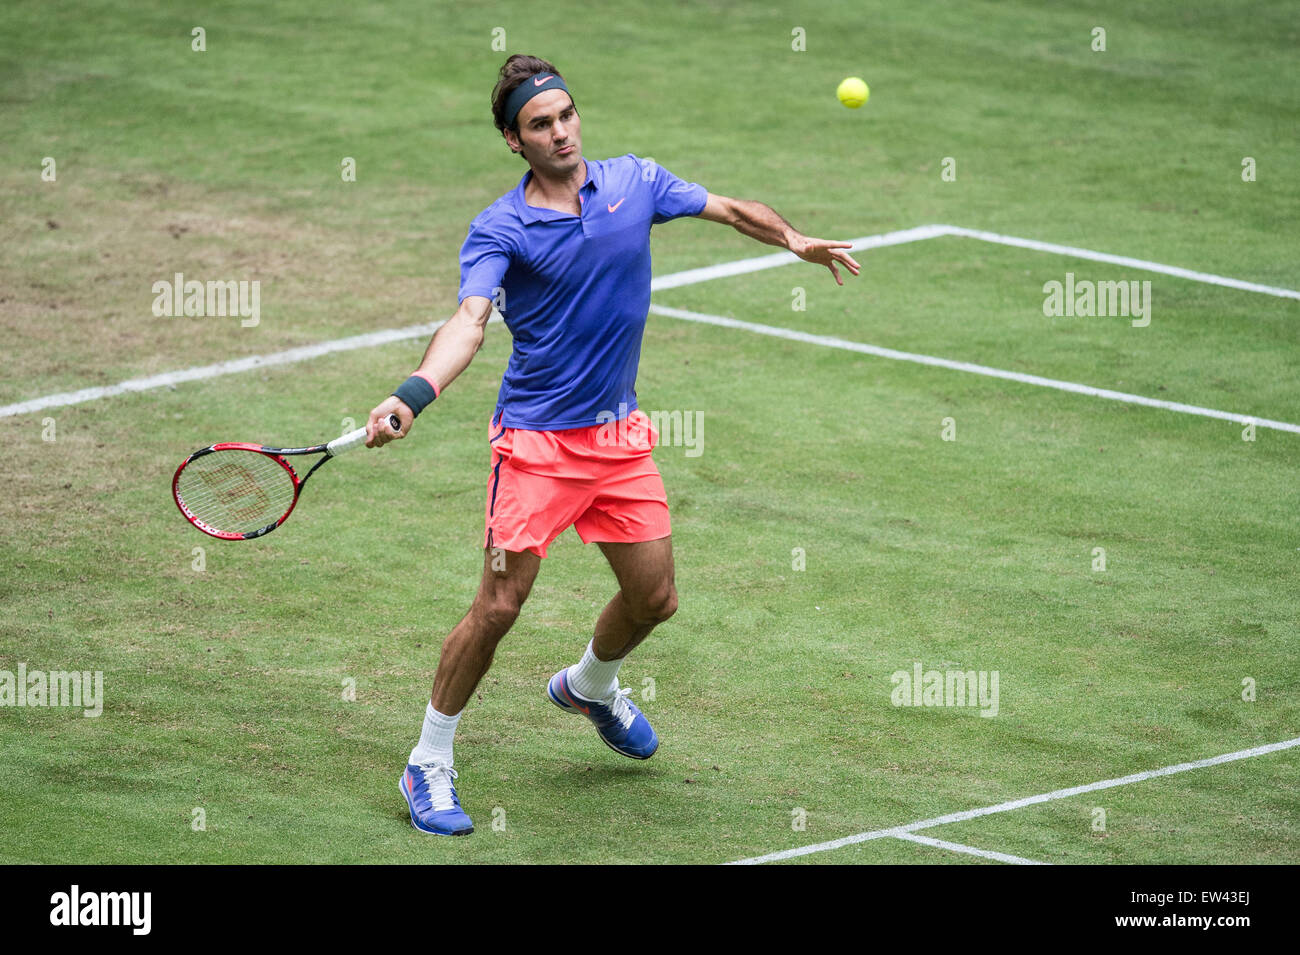 Halle, Alemania. 17 de junio de 2015. Roger Federer de Suiza en acción durante el partido de octavos de final contra Gulbis de Letonia en el torneo de tenis de la ATP en Halle, Alemania, 17 de junio de 2015. Foto: MAJA HITIJ/dpa/Alamy Live News Foto de stock